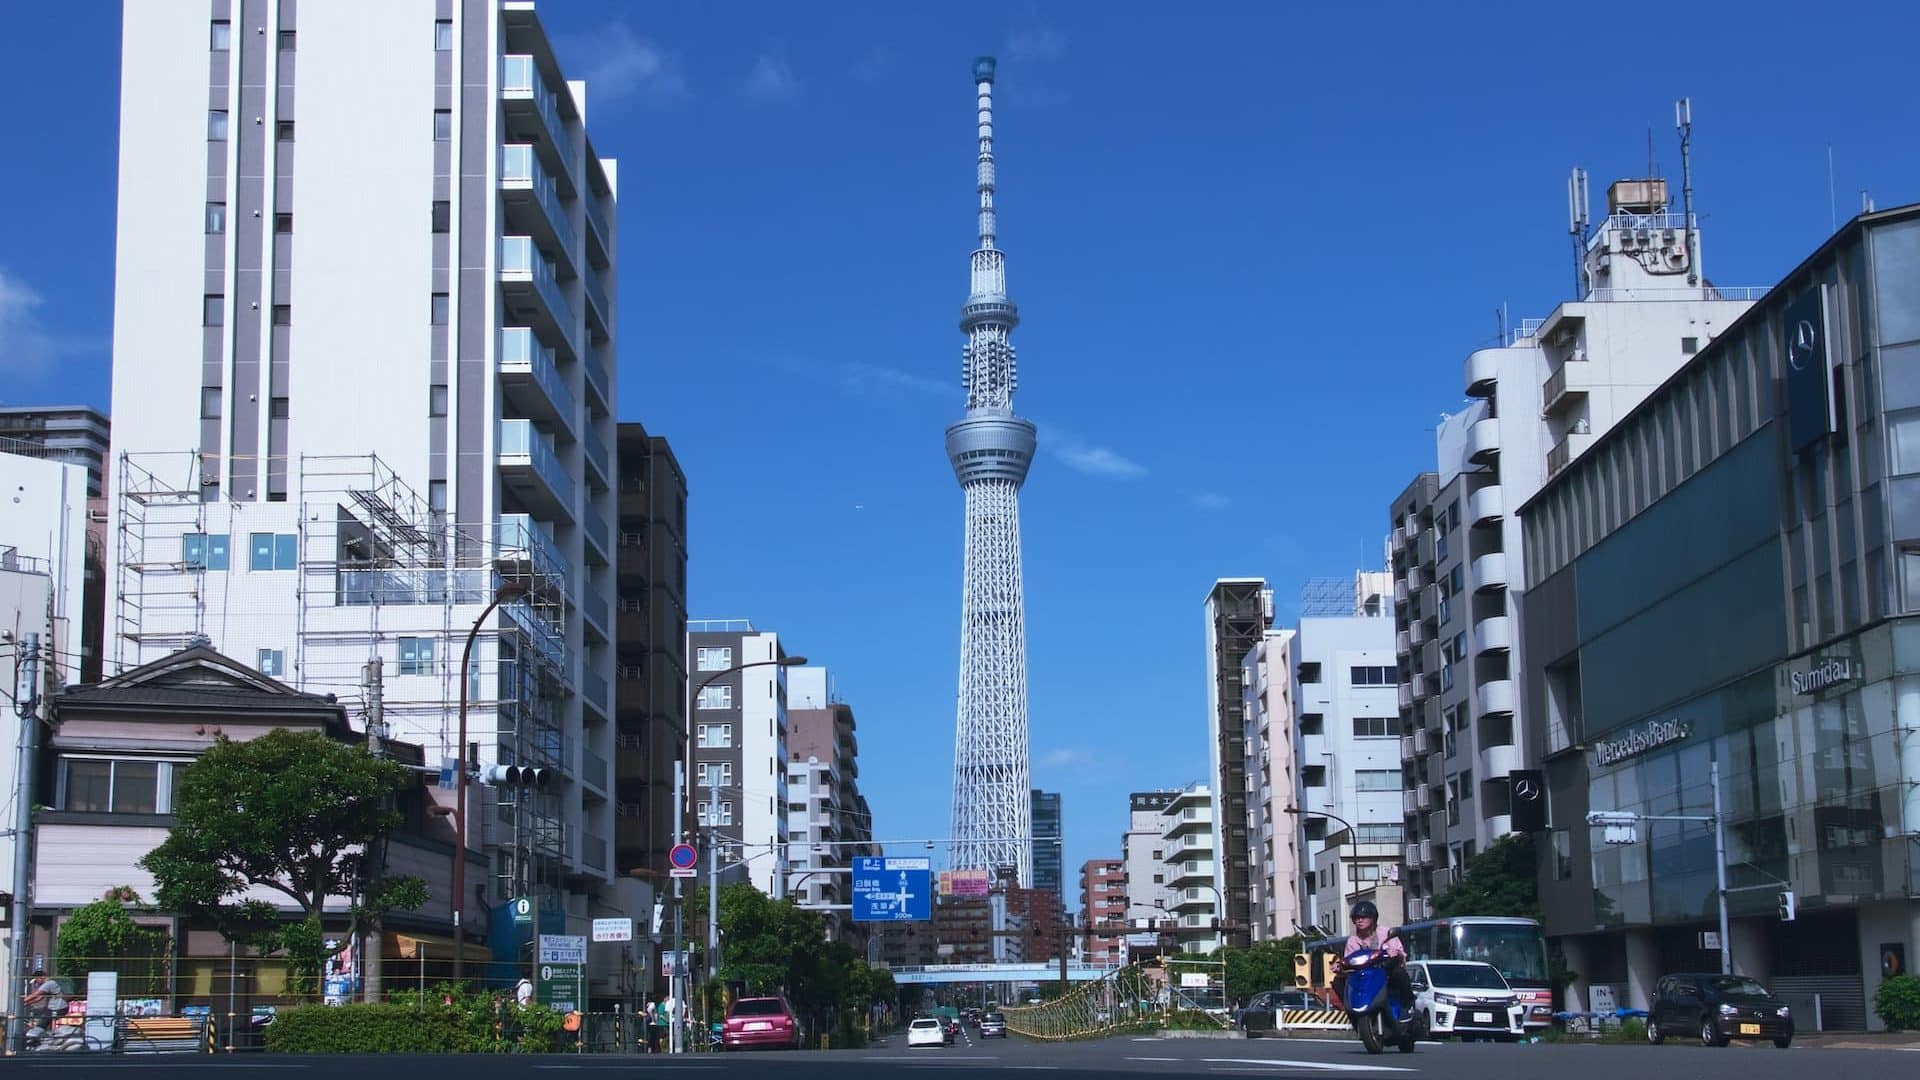 Tòquio Skytree és l'atracció més famosa de Sumida